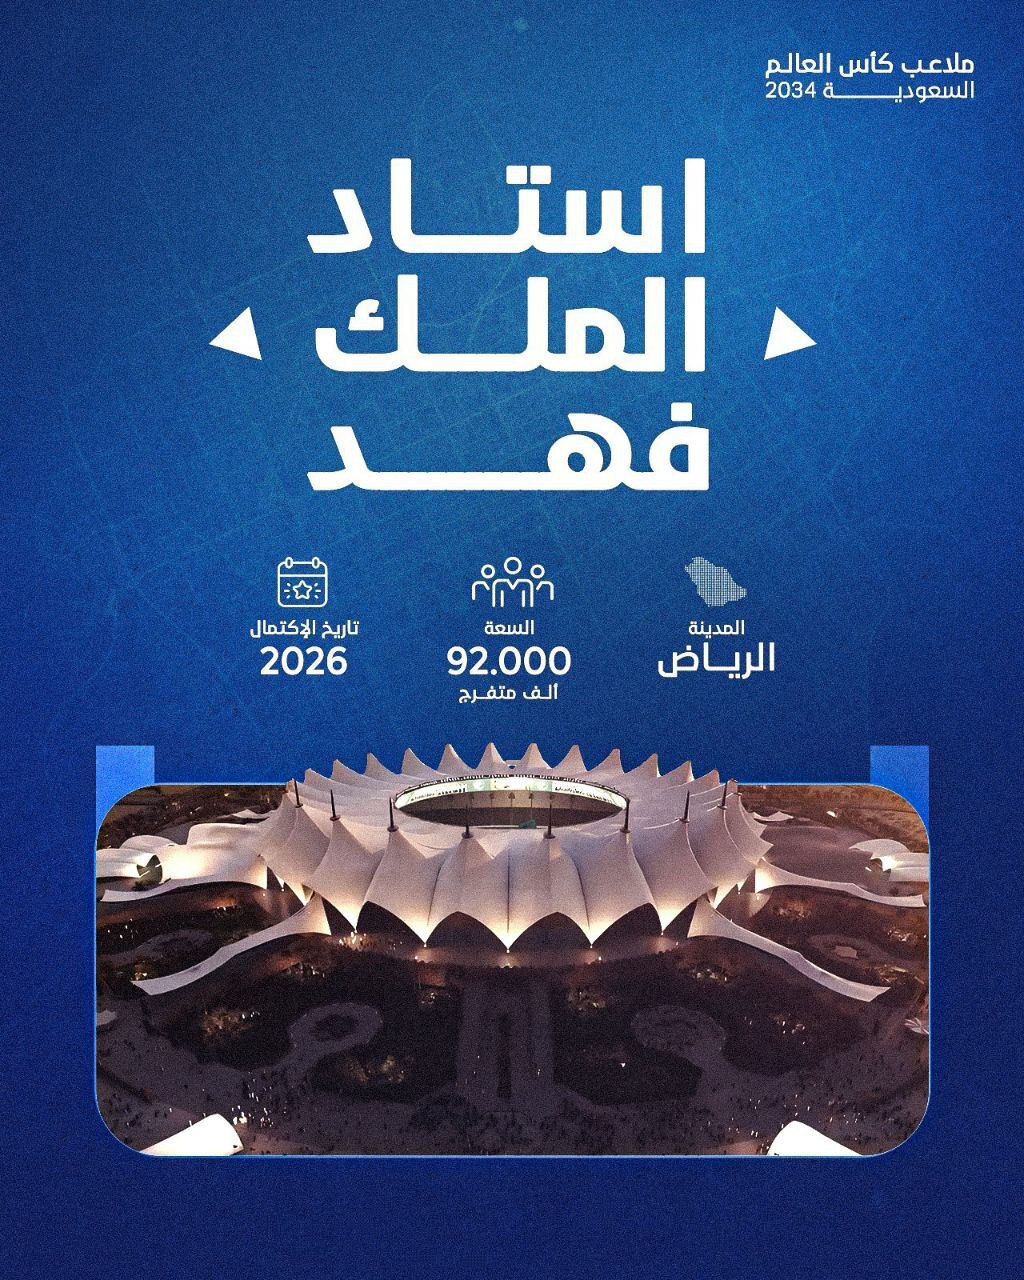 رونمایی از پانزده ورزشگاه مدرن برای جام جهانی 2034 عربستان